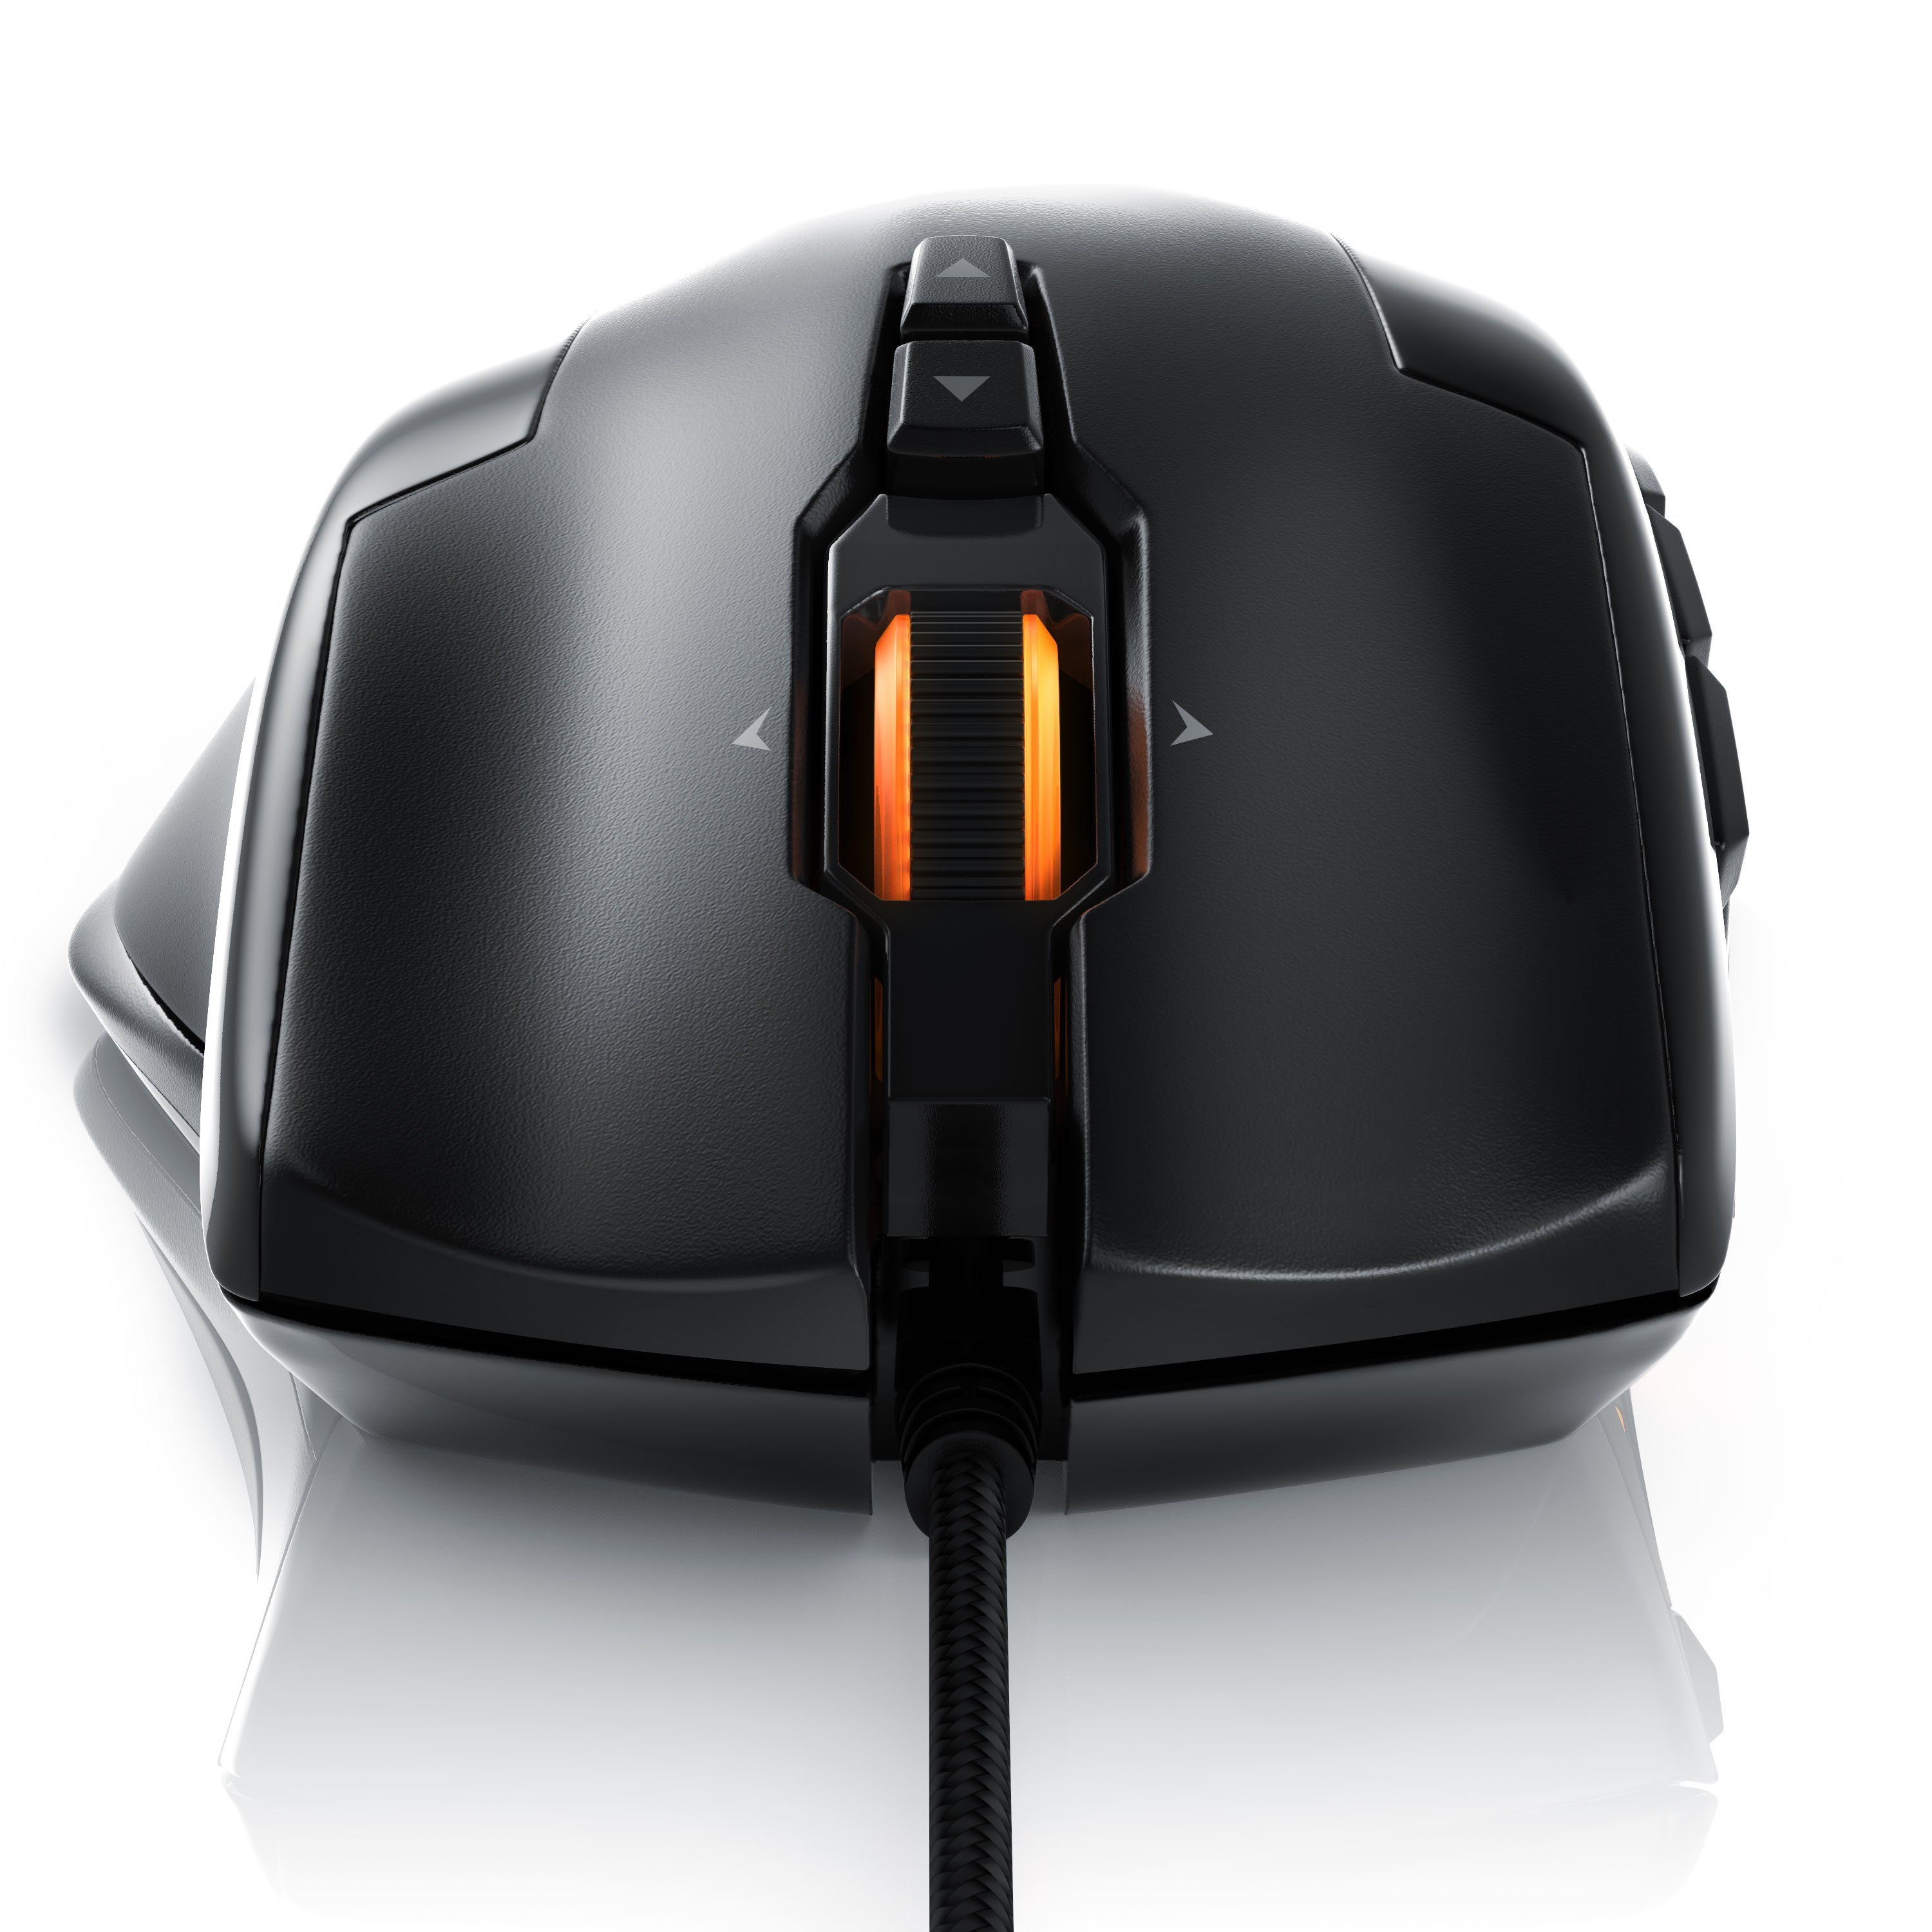 Gaming-Maus Gewichts-Justierung) 10800dpi, (kabelgebunden, USB Laser 1000 dpi, mit Gaming LEDs, Titanwolf RGB Mouse